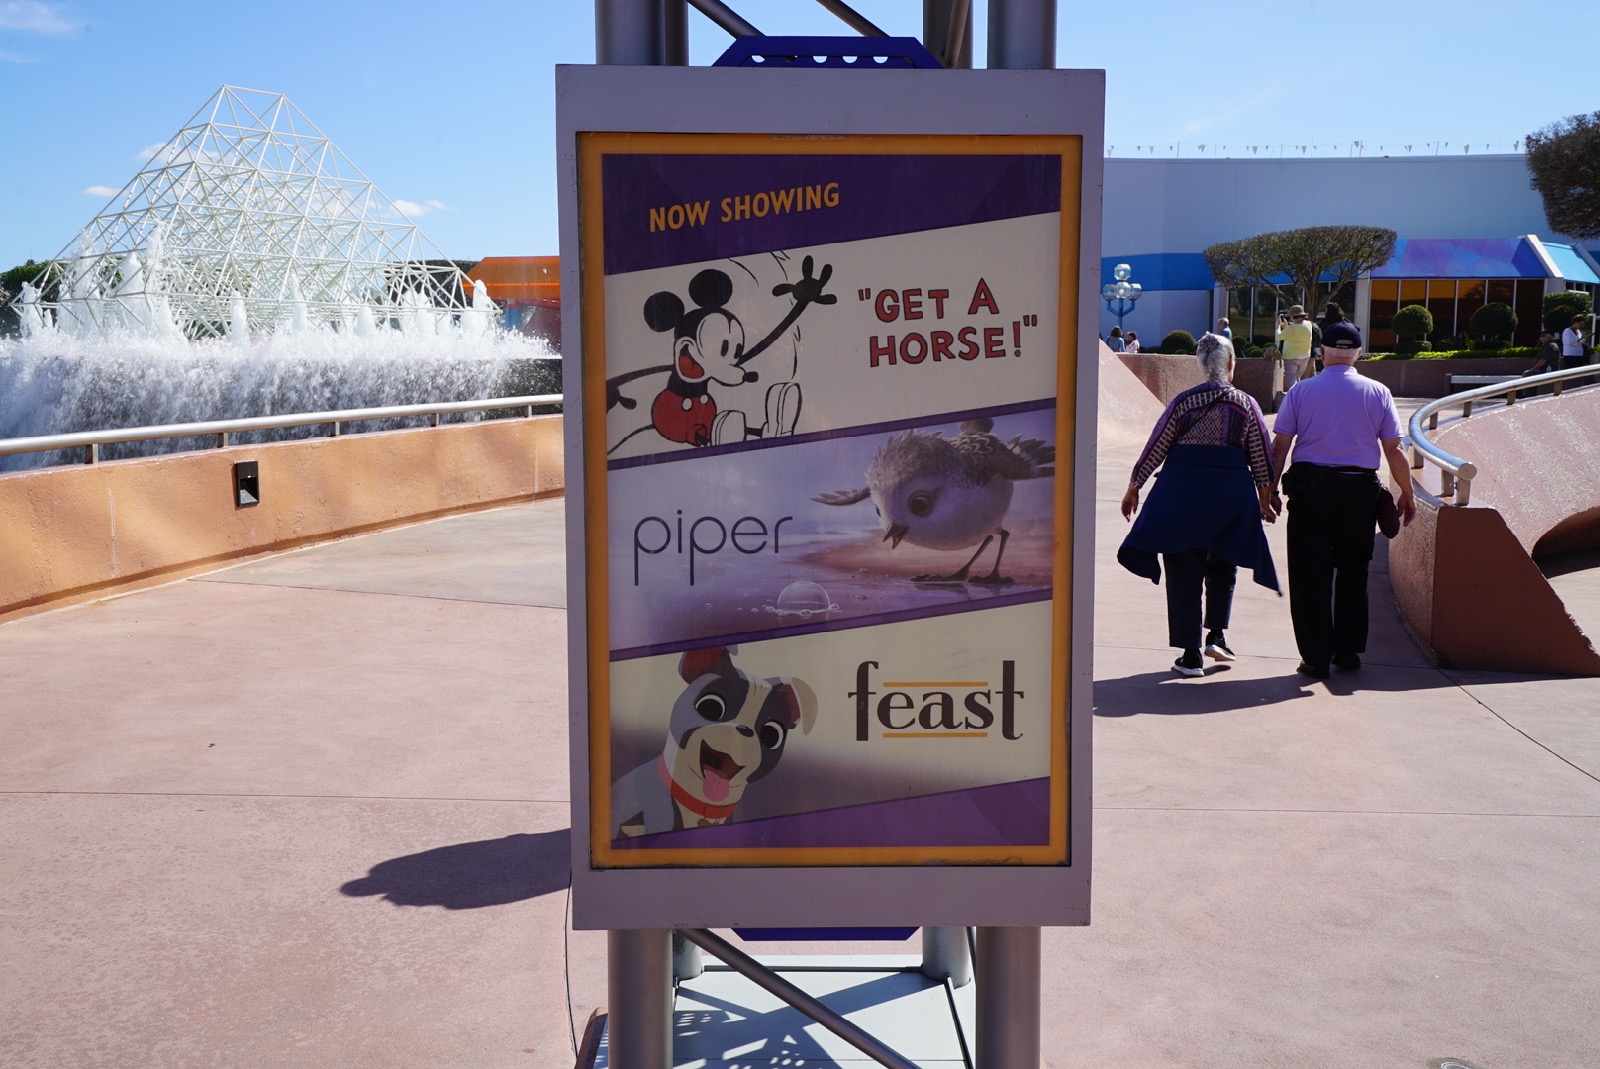 Disney-pixar-short-film-fest-outside-sign